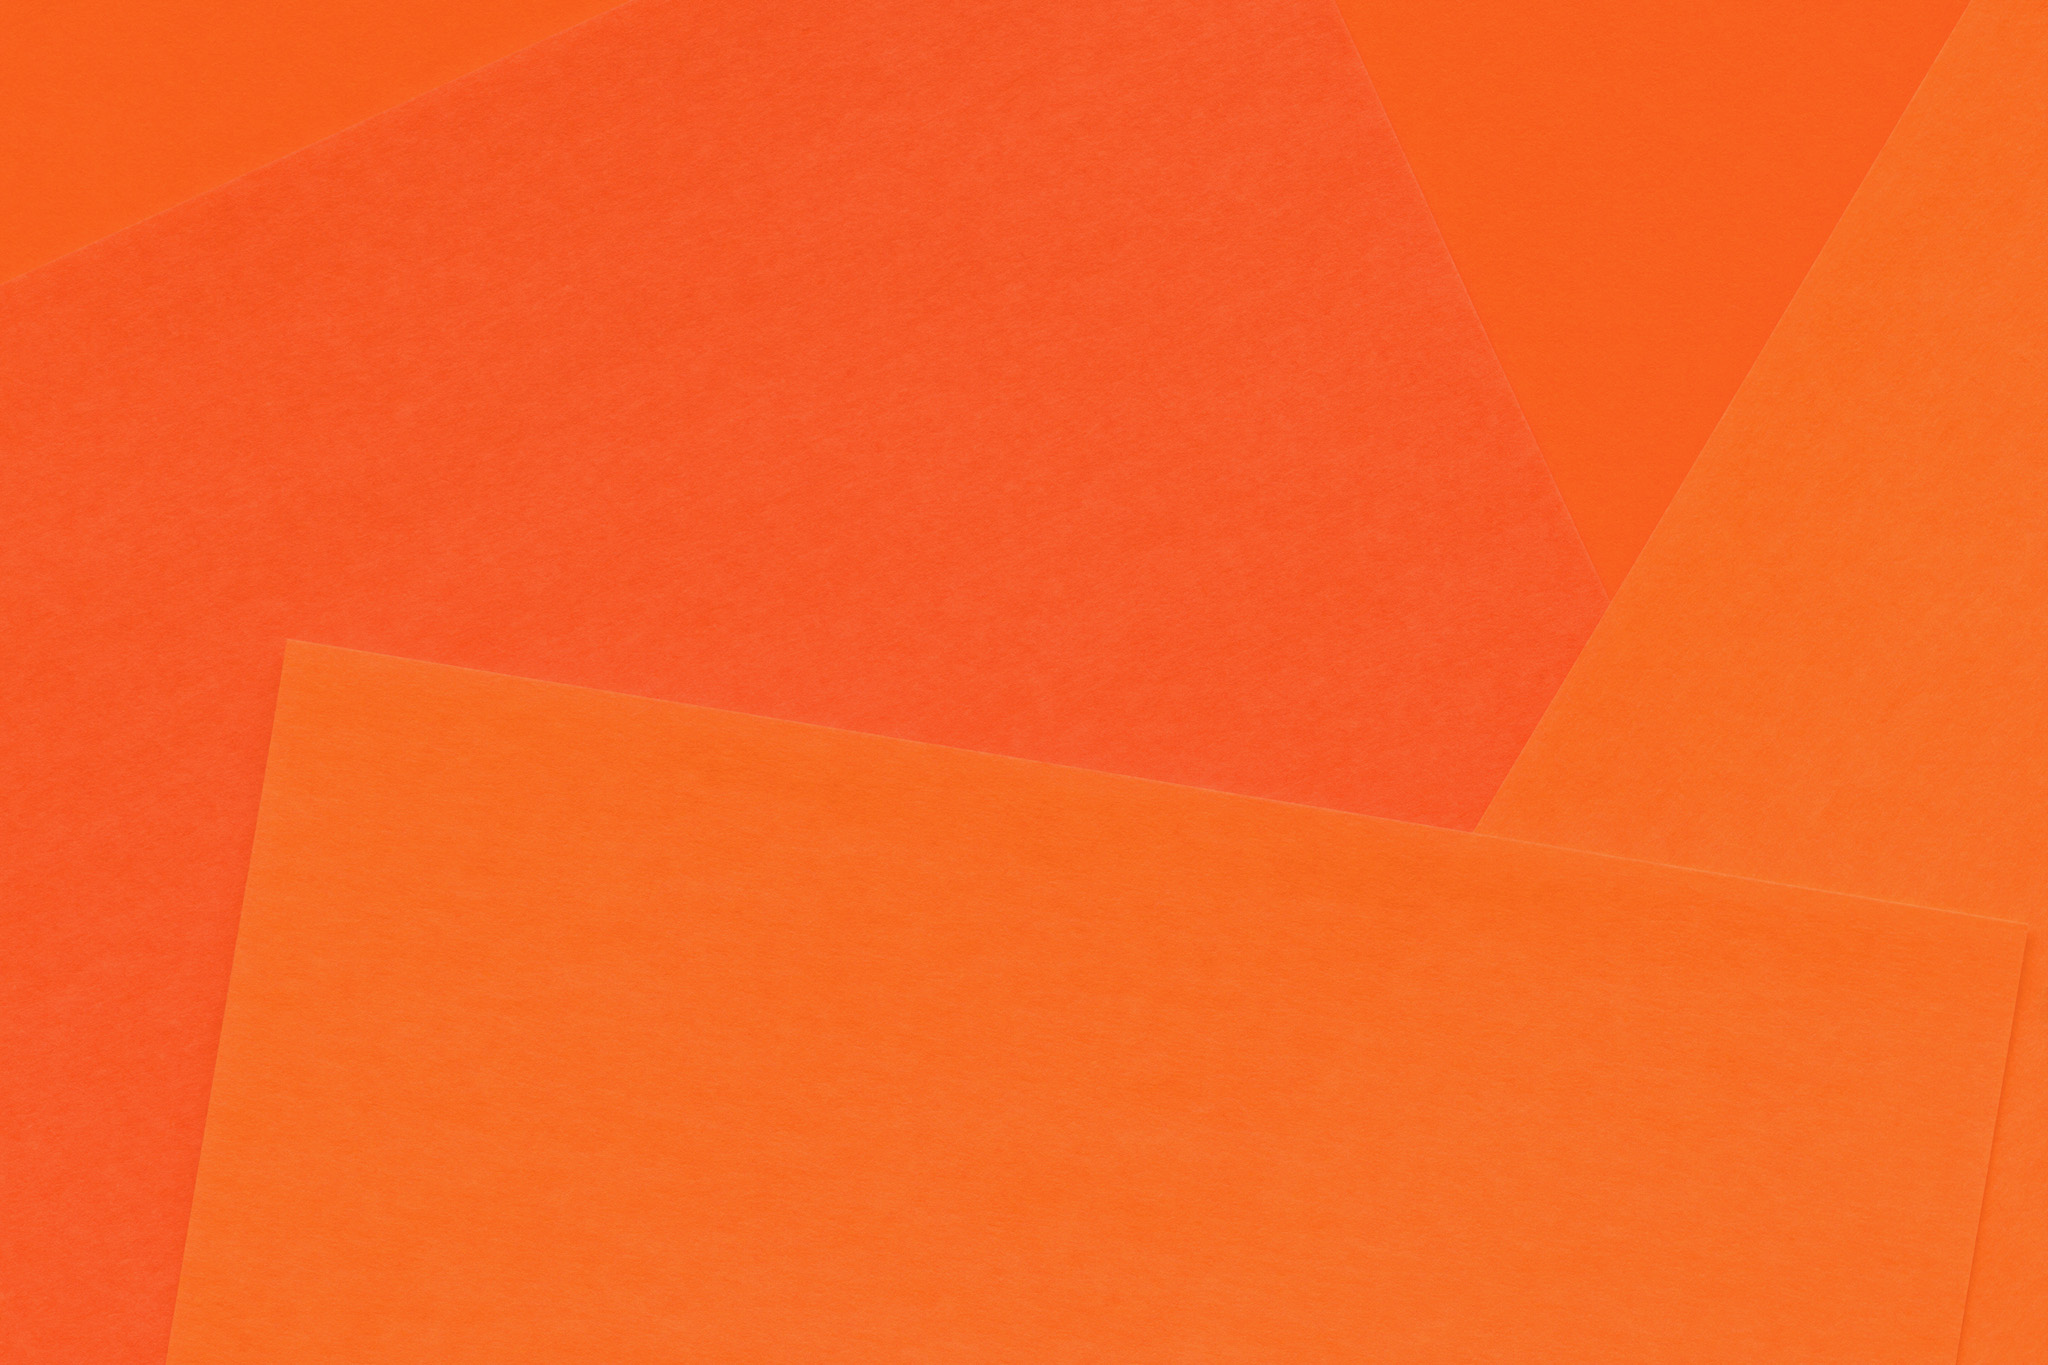 オレンジ色のシンプルなテクスチャ壁紙 の画像素材を無料ダウンロード 1 フリー素材 Beiz Images